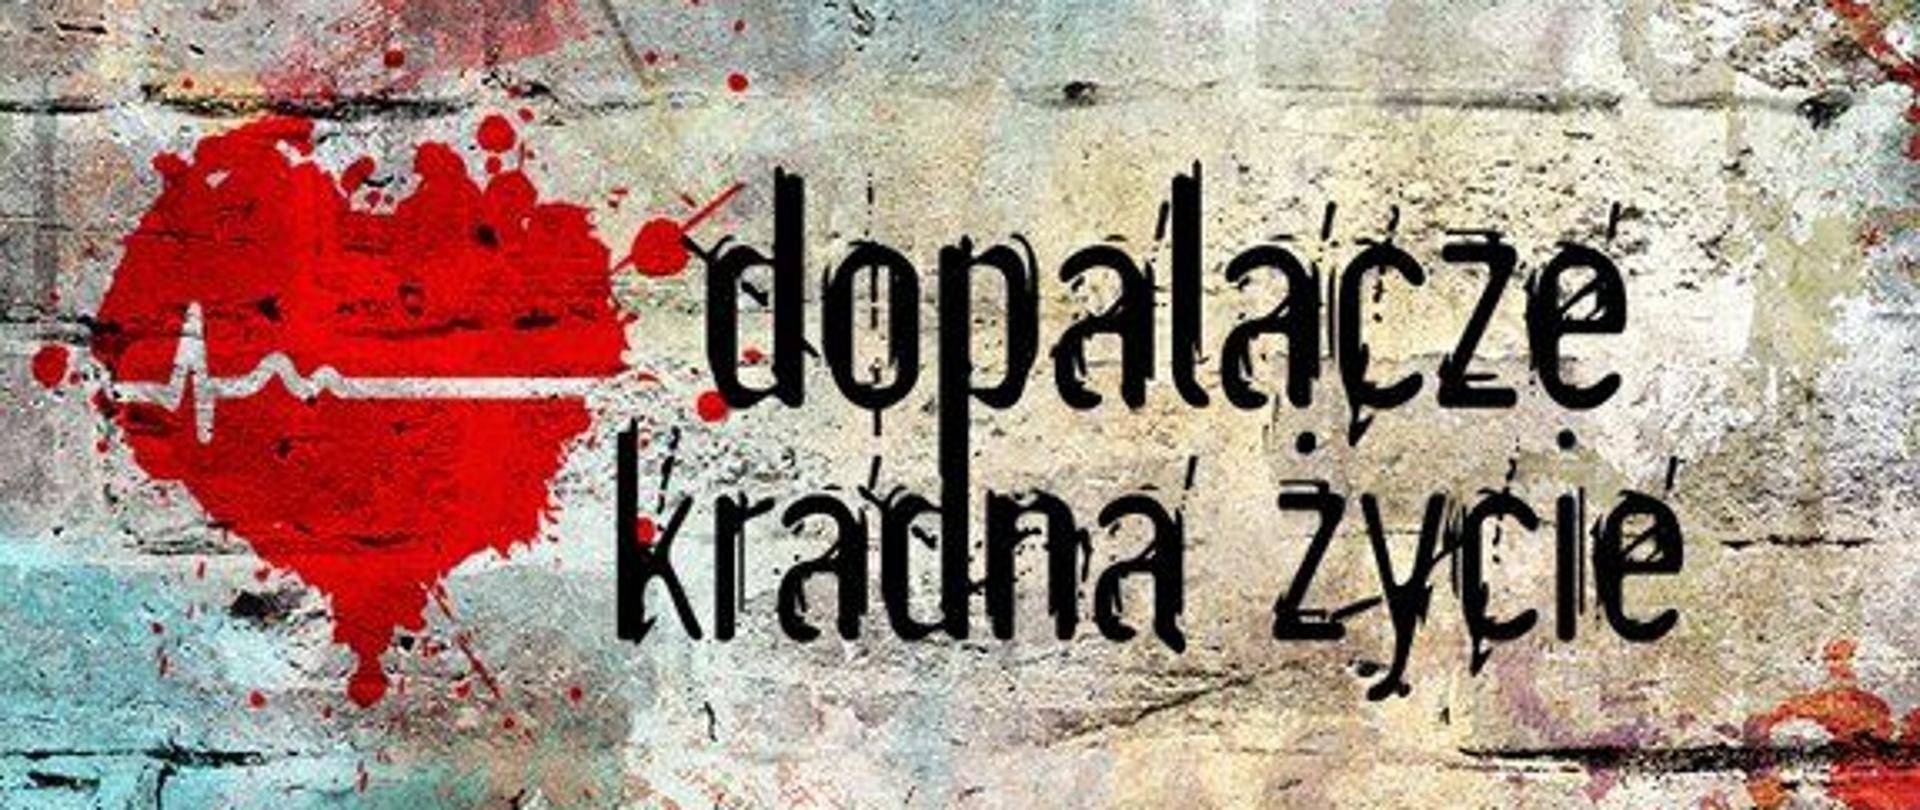 Logo kampanii "Dopalacze kradna życie". Prowadzi na stronę Wojewódzkiej Stacji Sanitarno-Epidemiologicznej w Opolu, do artykułu opisujcego ta kampanie.